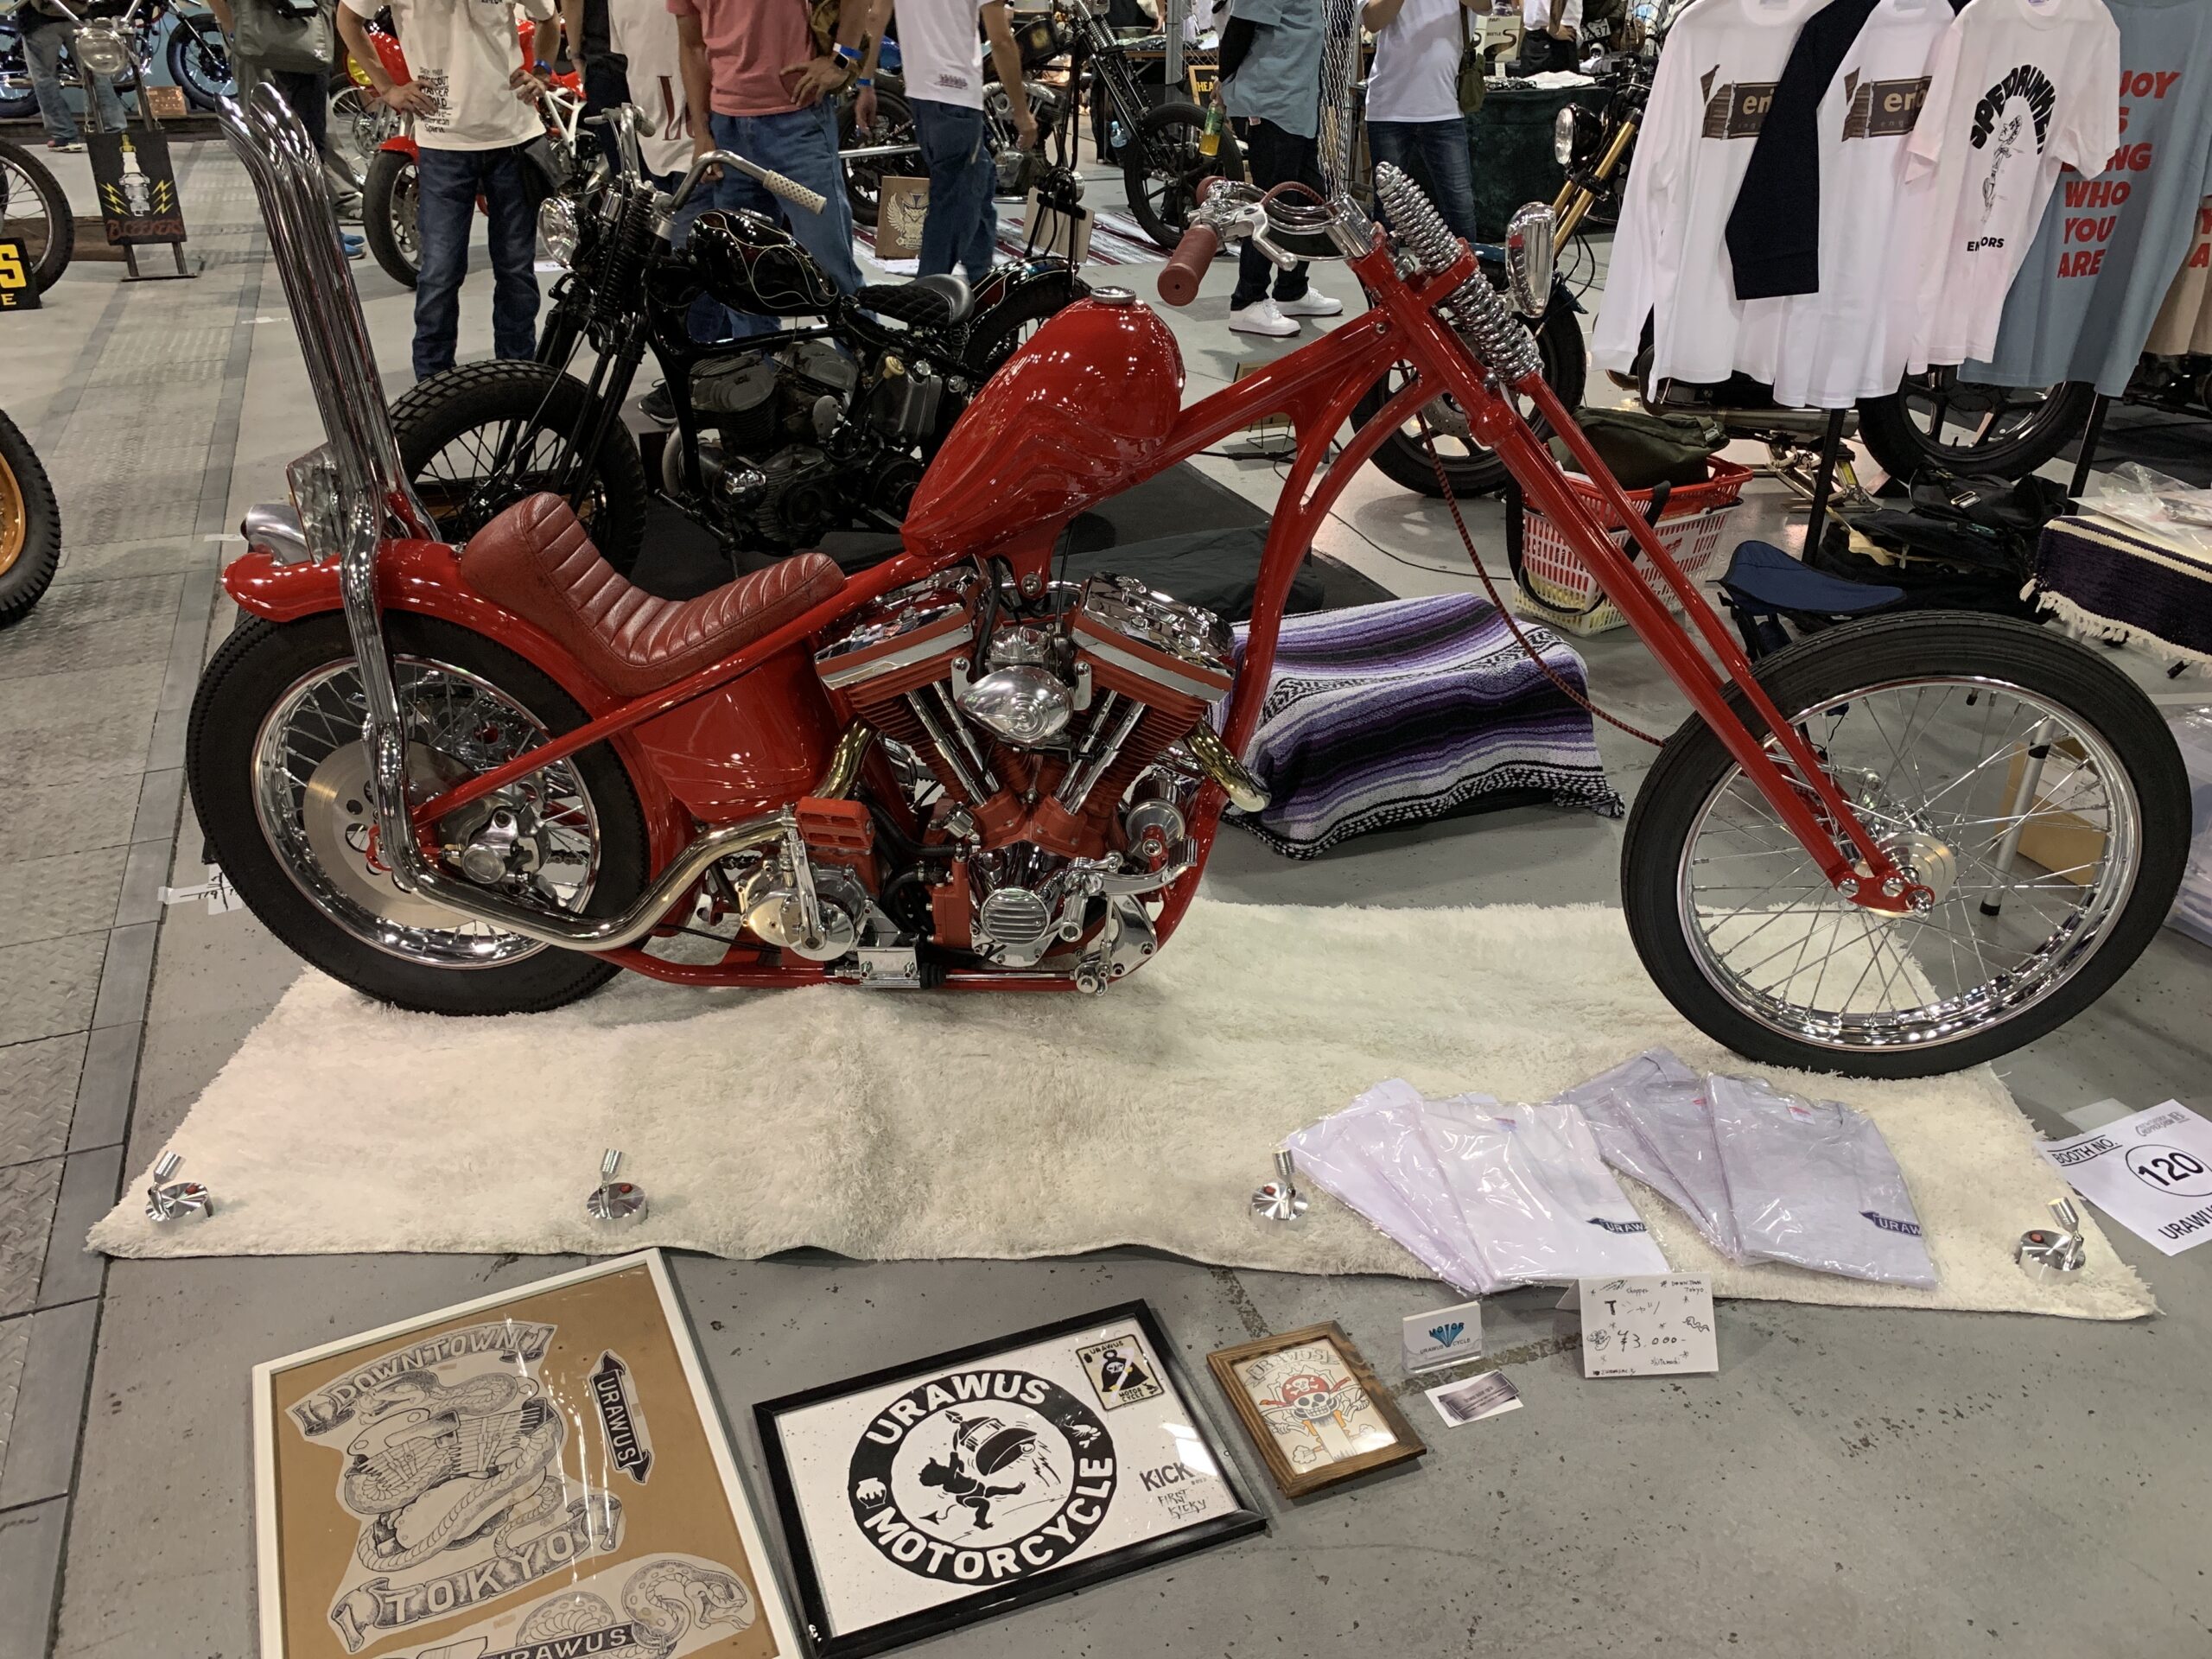 URAWUS MOTORCYCLE